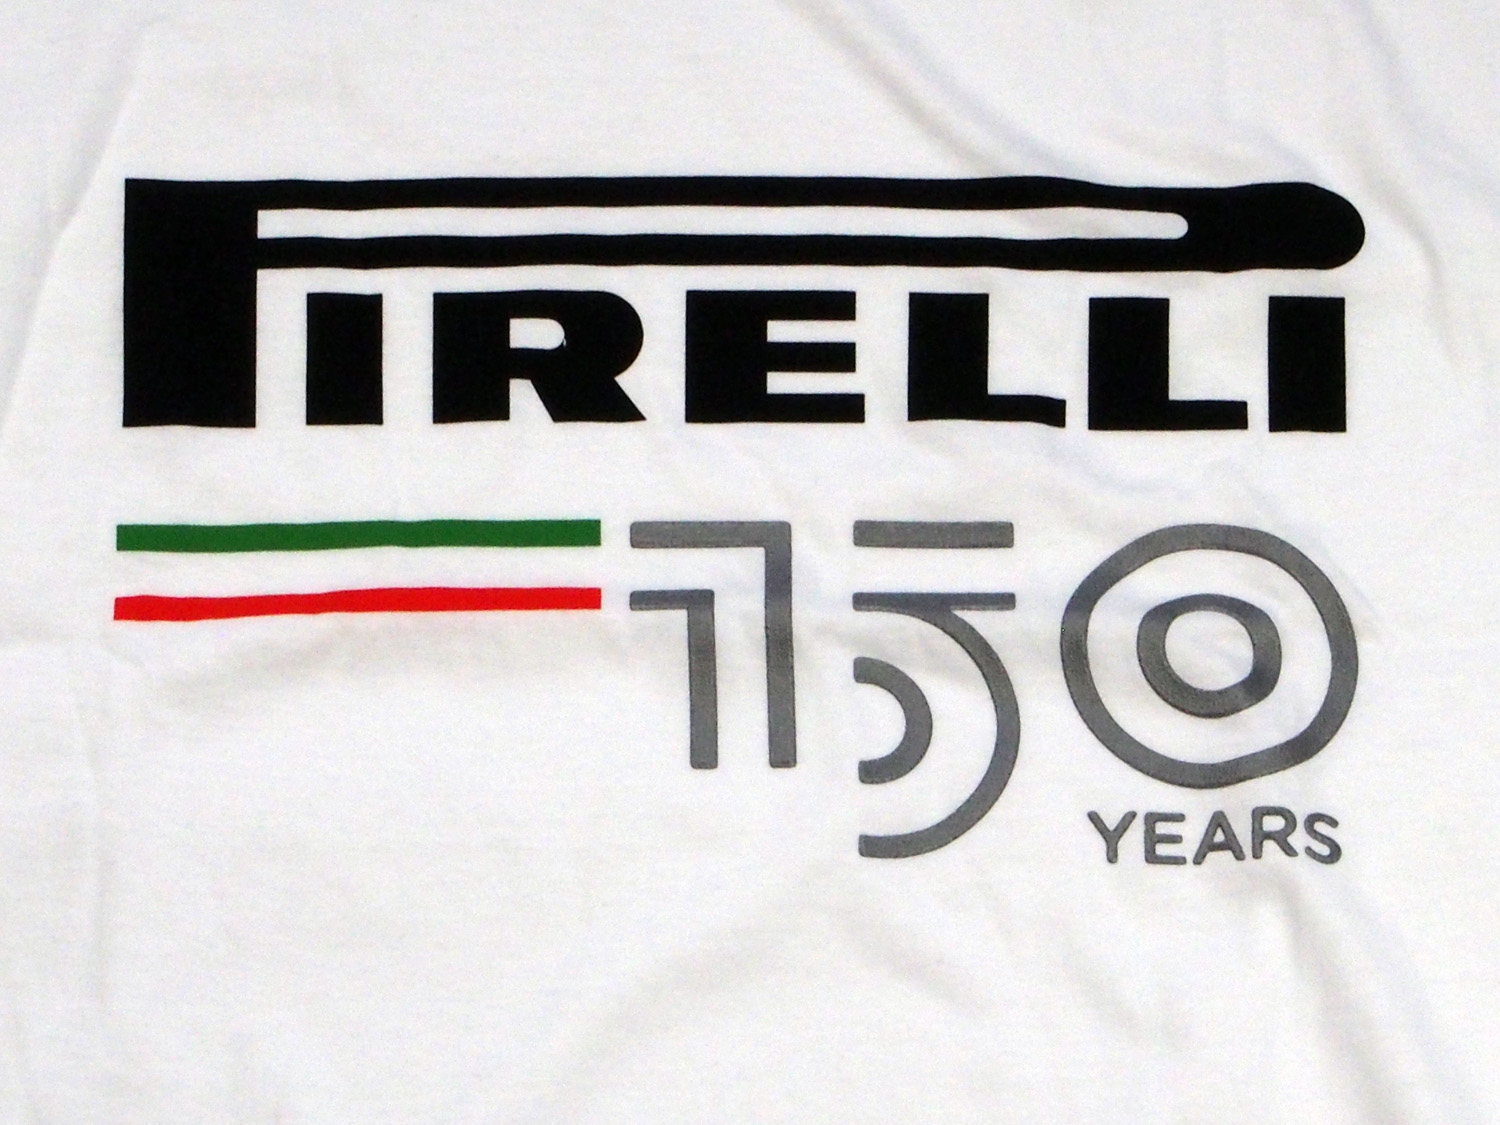 ピレリ Pirelli 150周年記念 Tシャツ / ホワイト画像